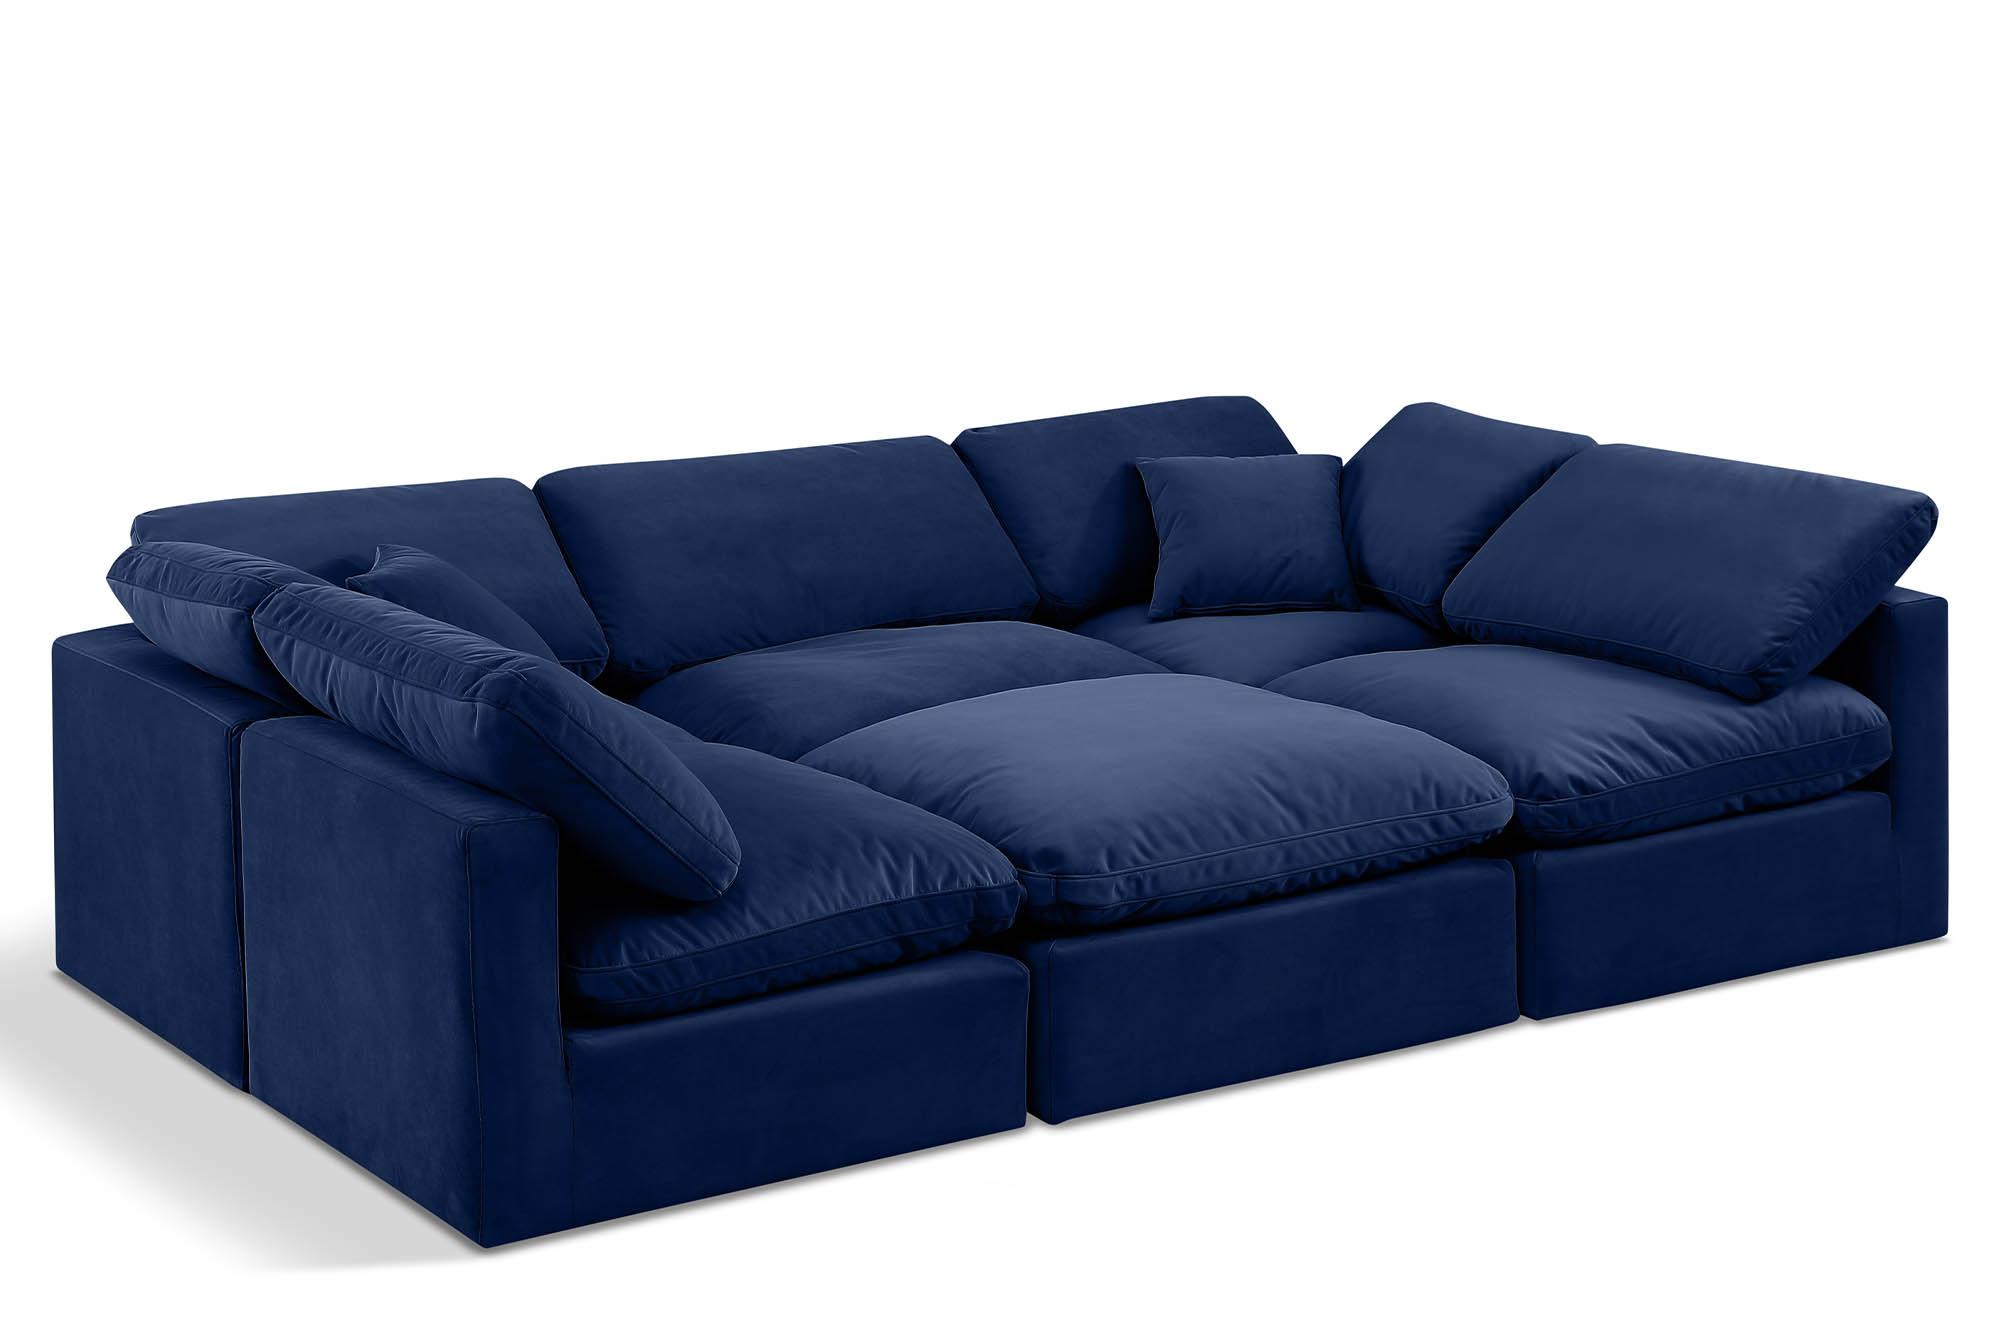 Contemporary, Modern Modular Sectional Sofa INDULGE 147Navy-Sec6C 147Navy-Sec6C in Navy Velvet